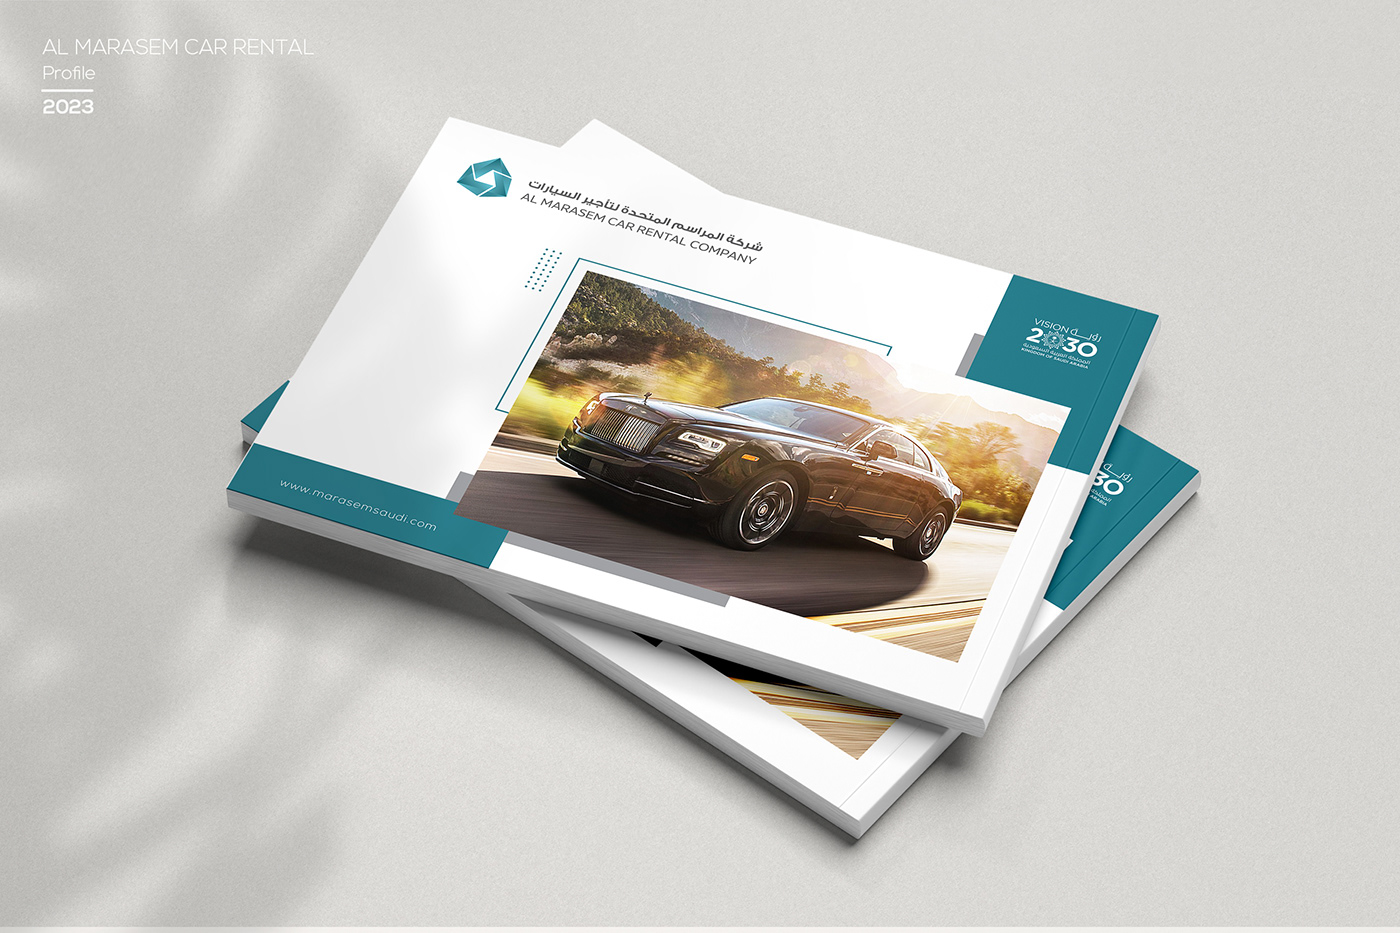 profile profile design Catalogue magazine catalog profiles book design car rental car Car rental